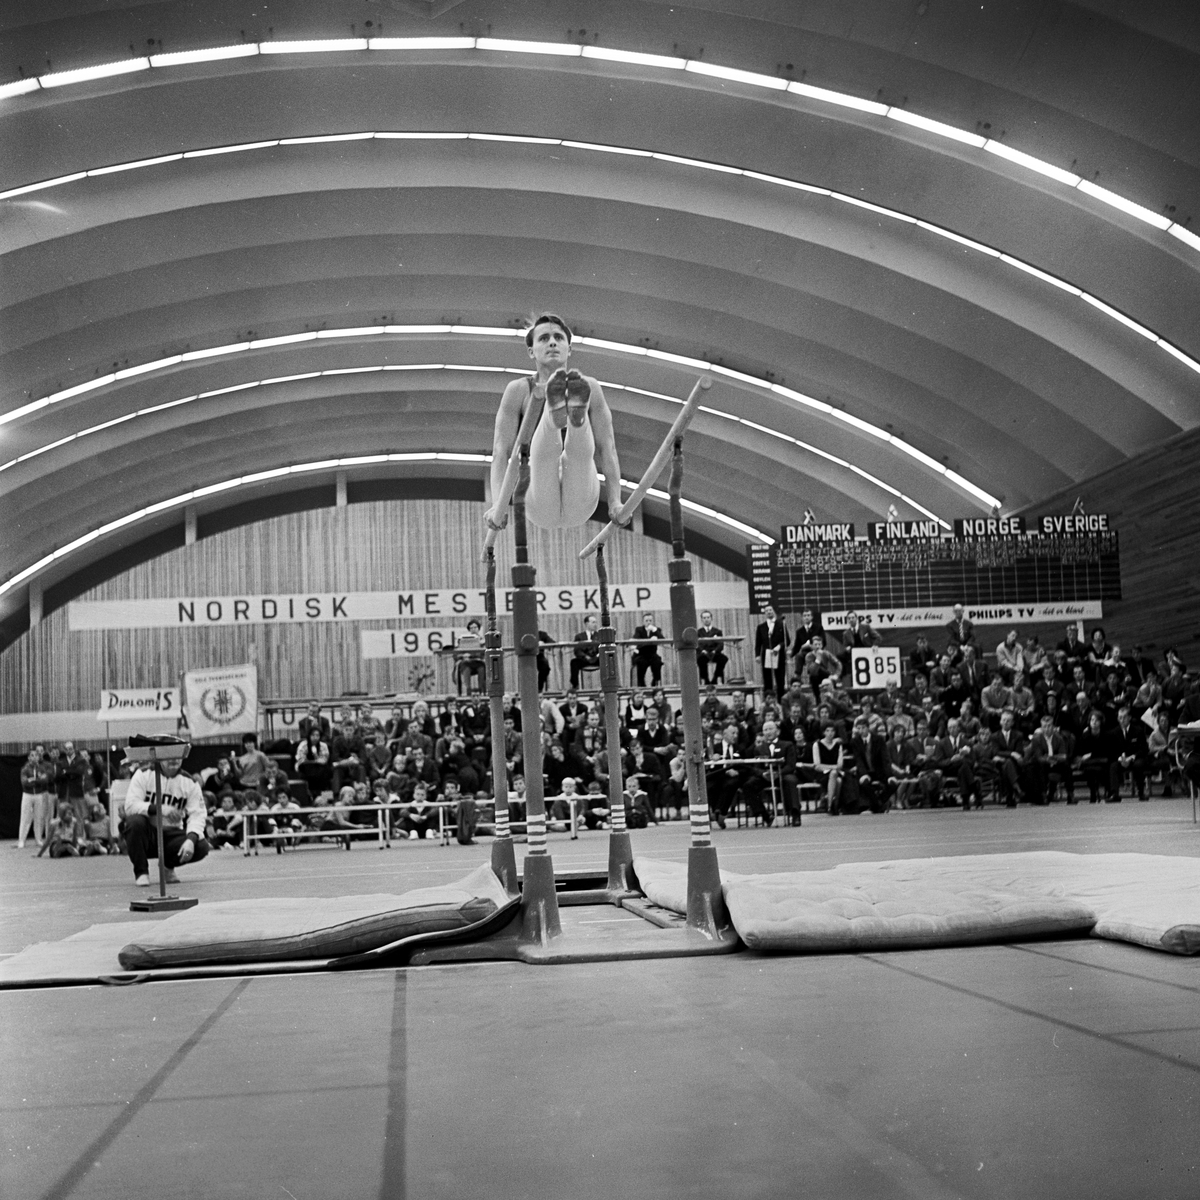 Serie. Nordisk mesterskap i turn, herreturnere, Njårdhallen i Oslo. Fotografert 2. desember 1961.